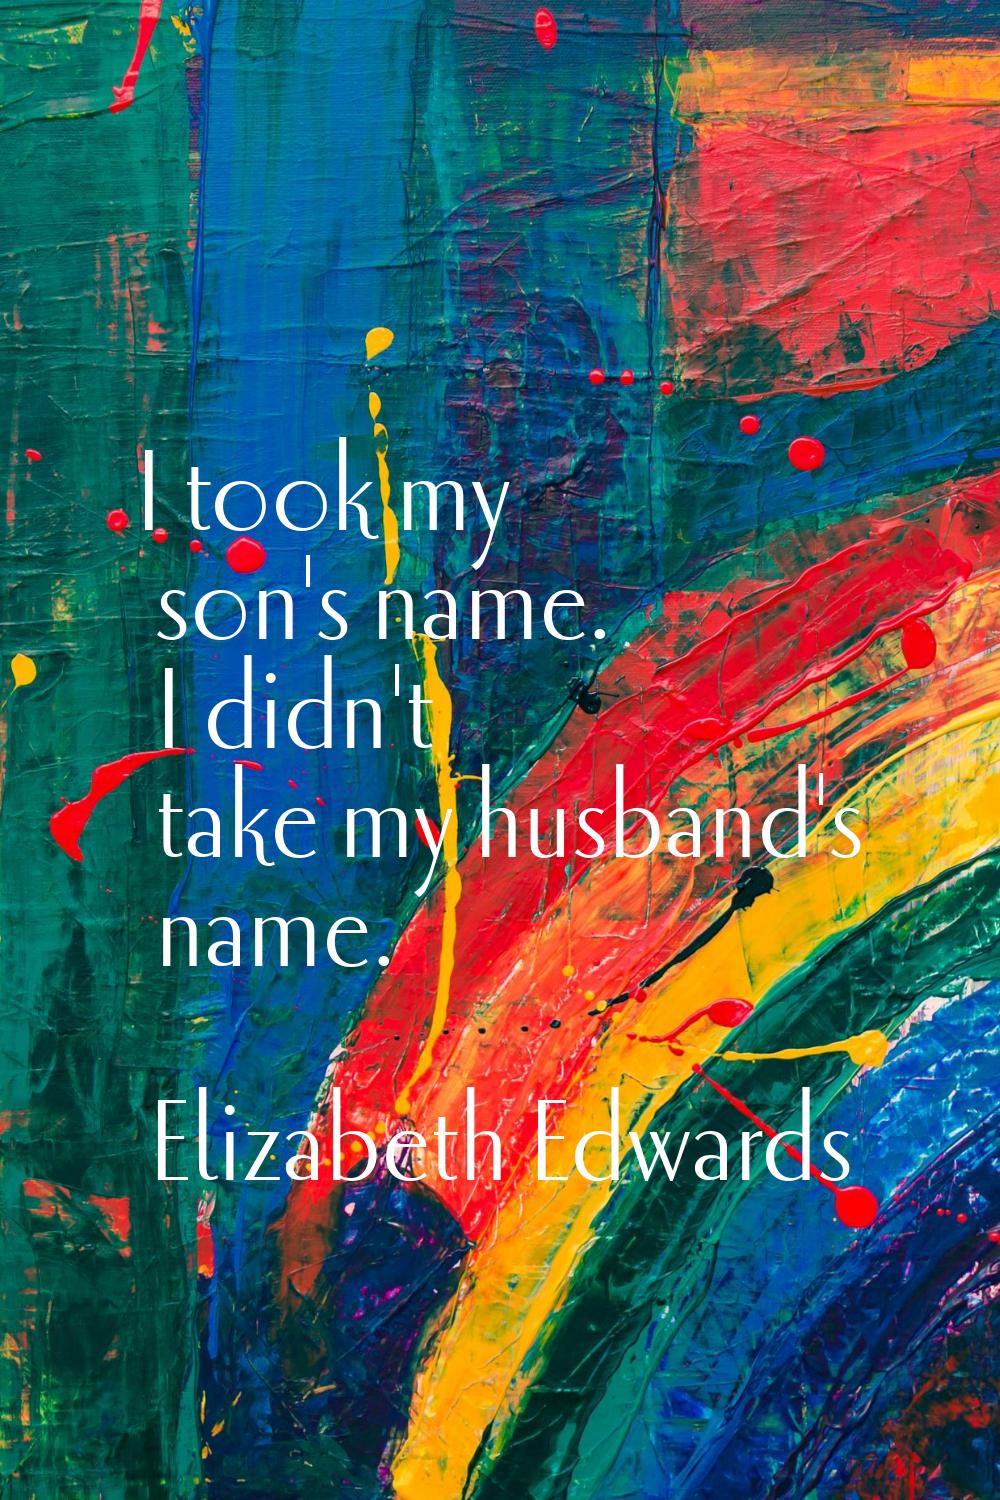 I took my son's name. I didn't take my husband's name.